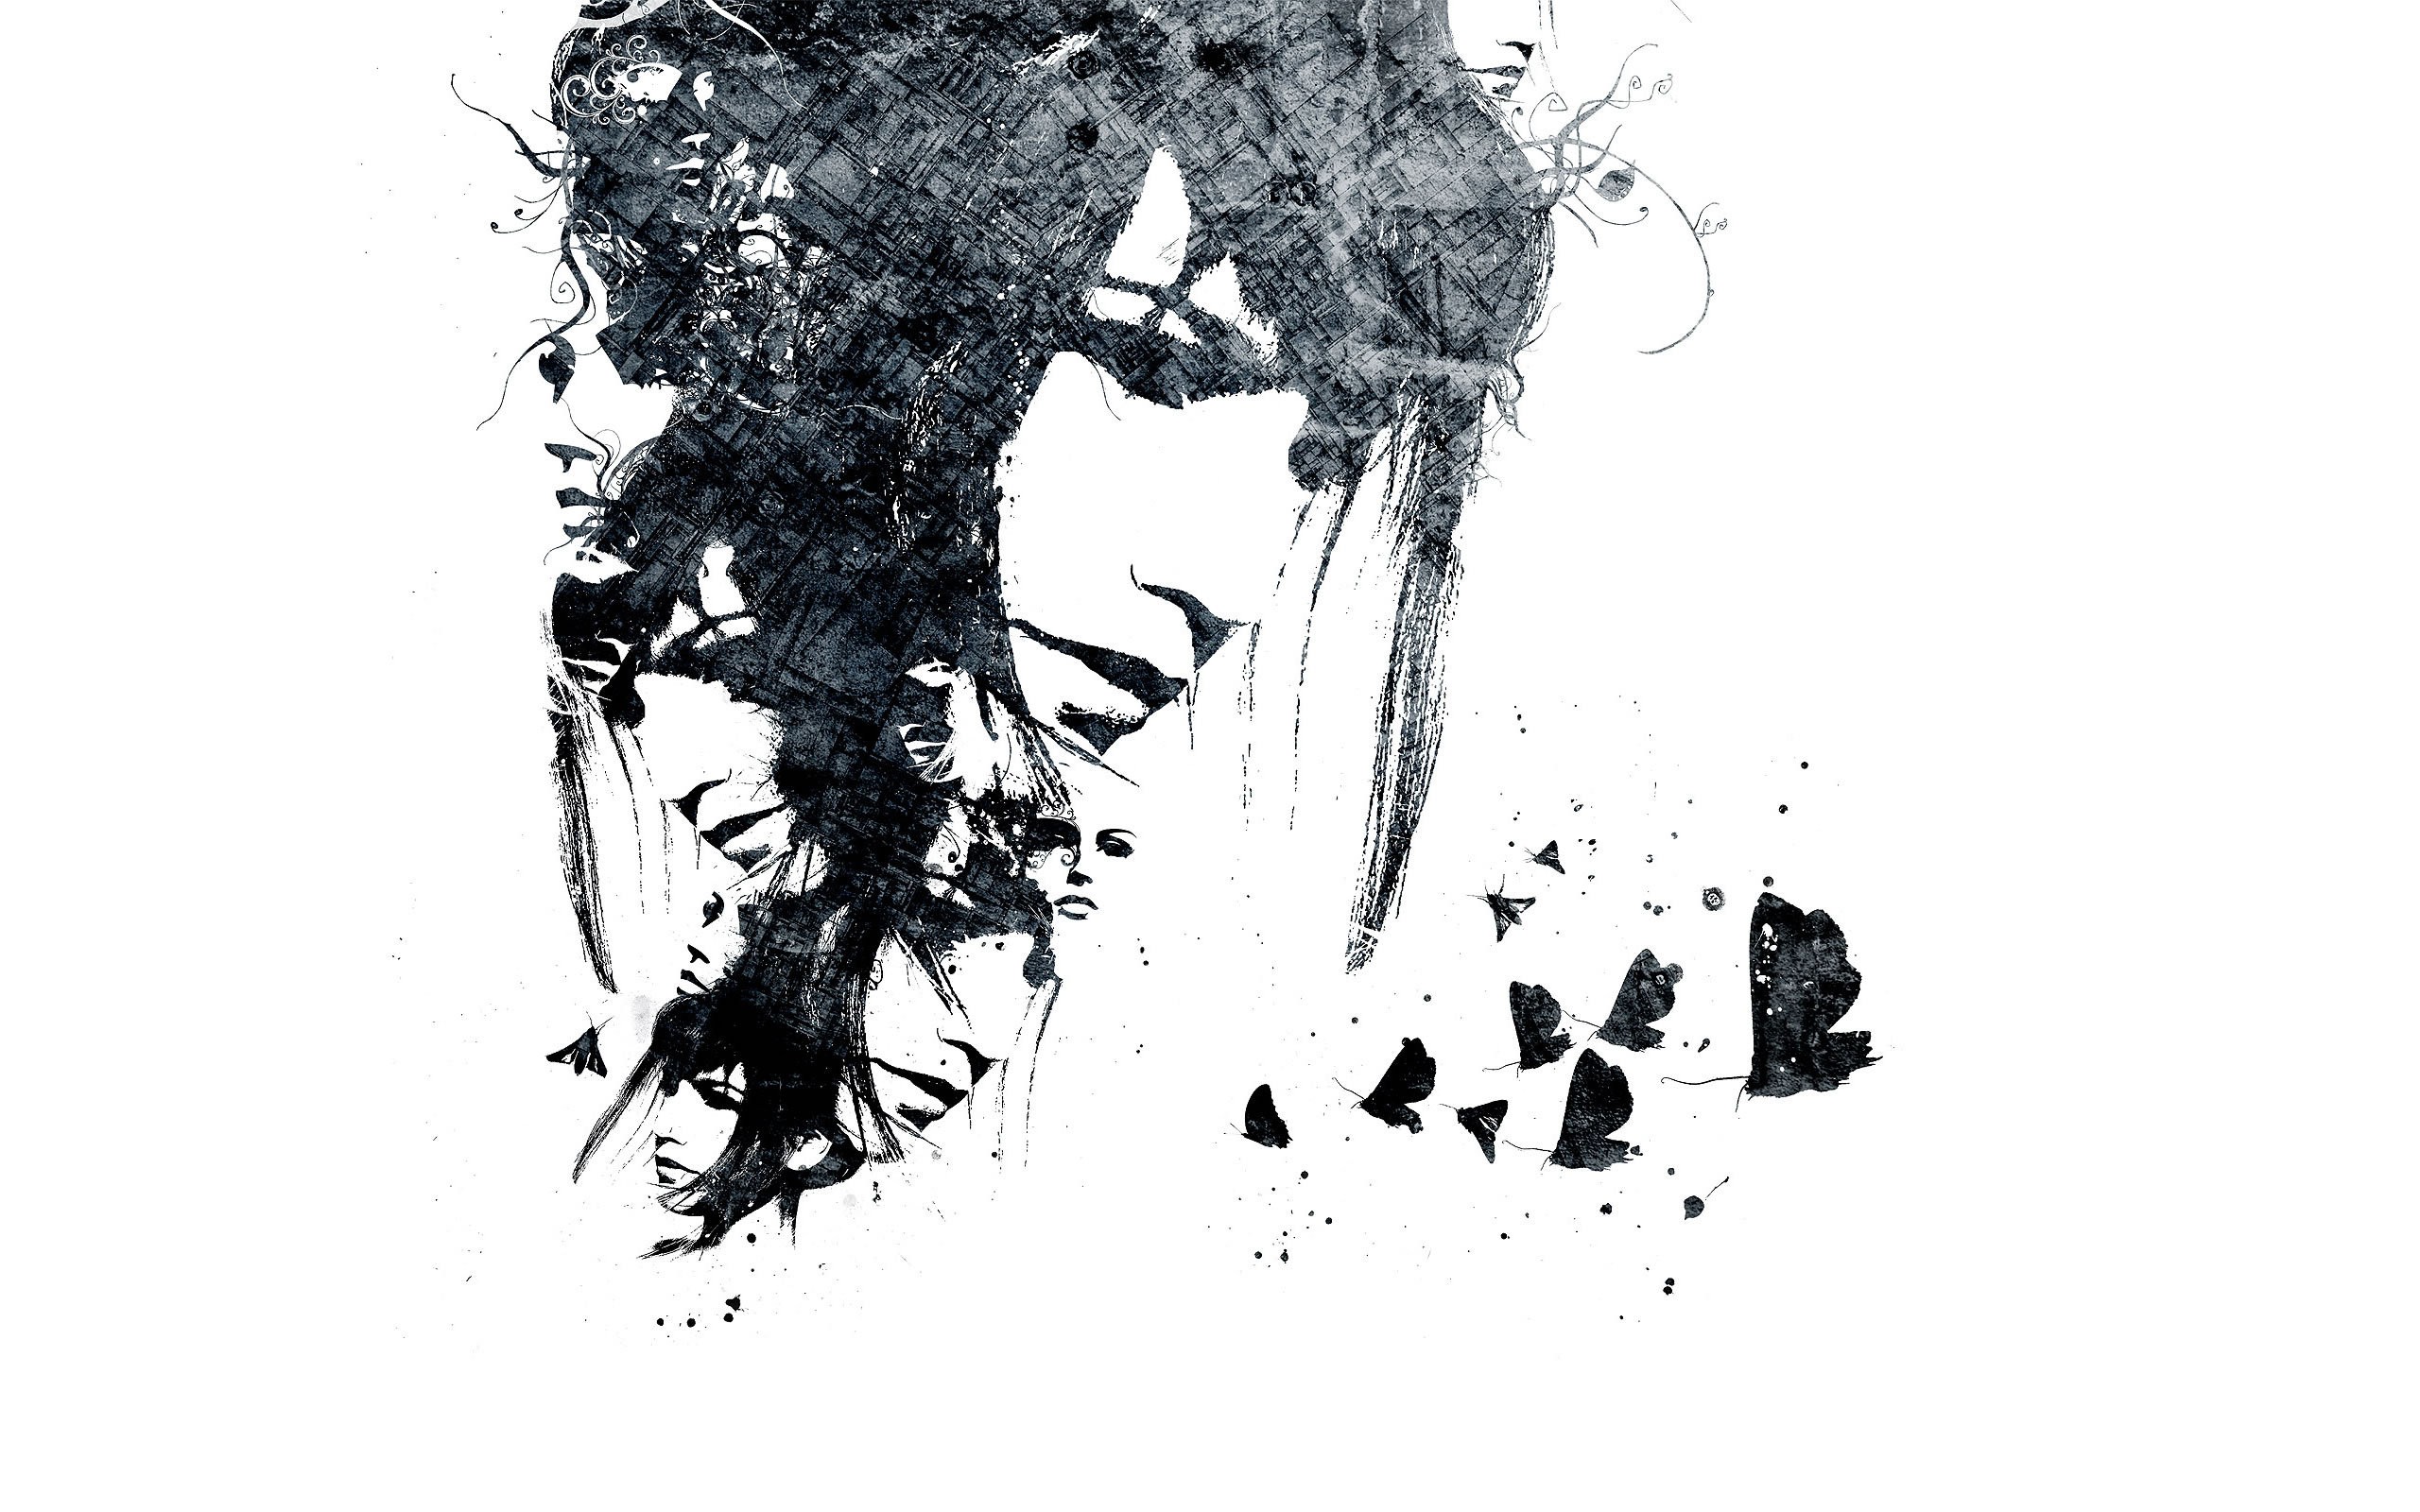 Abstract Alex Cherry Face Moths Digital Art Artwork 2560x1600